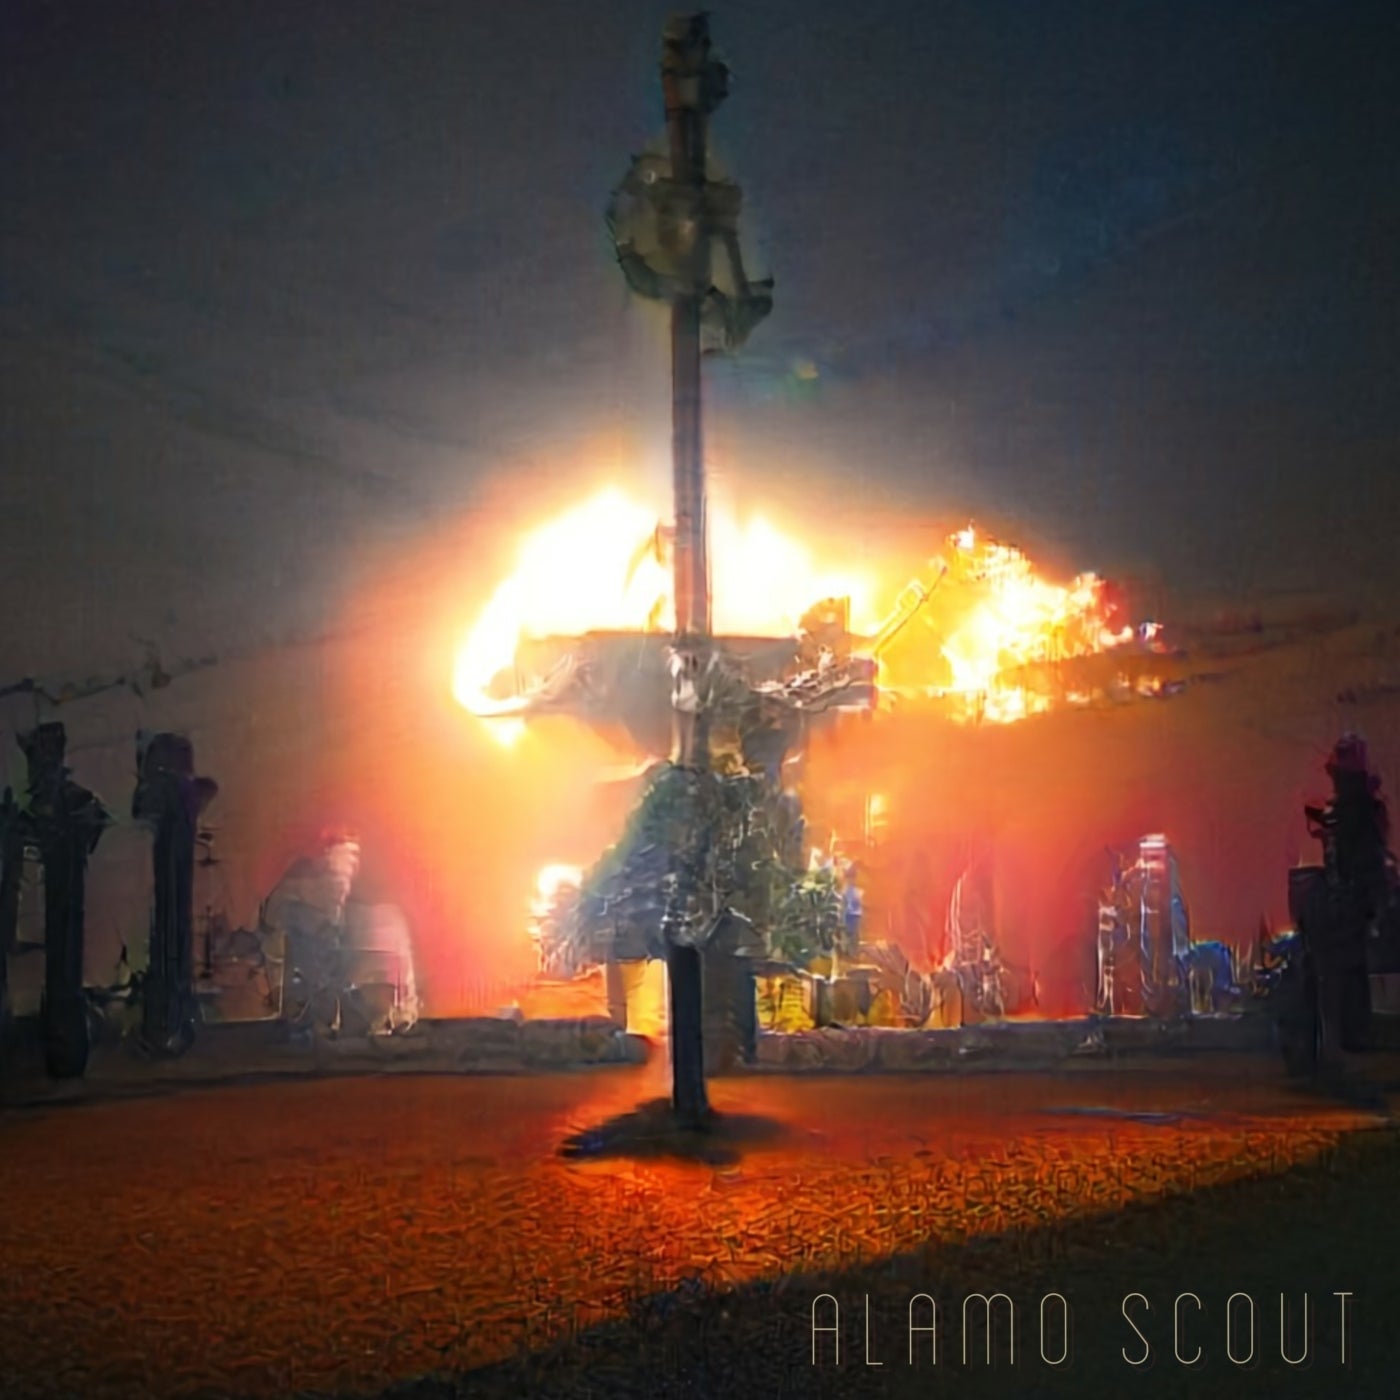 Alamo Scout